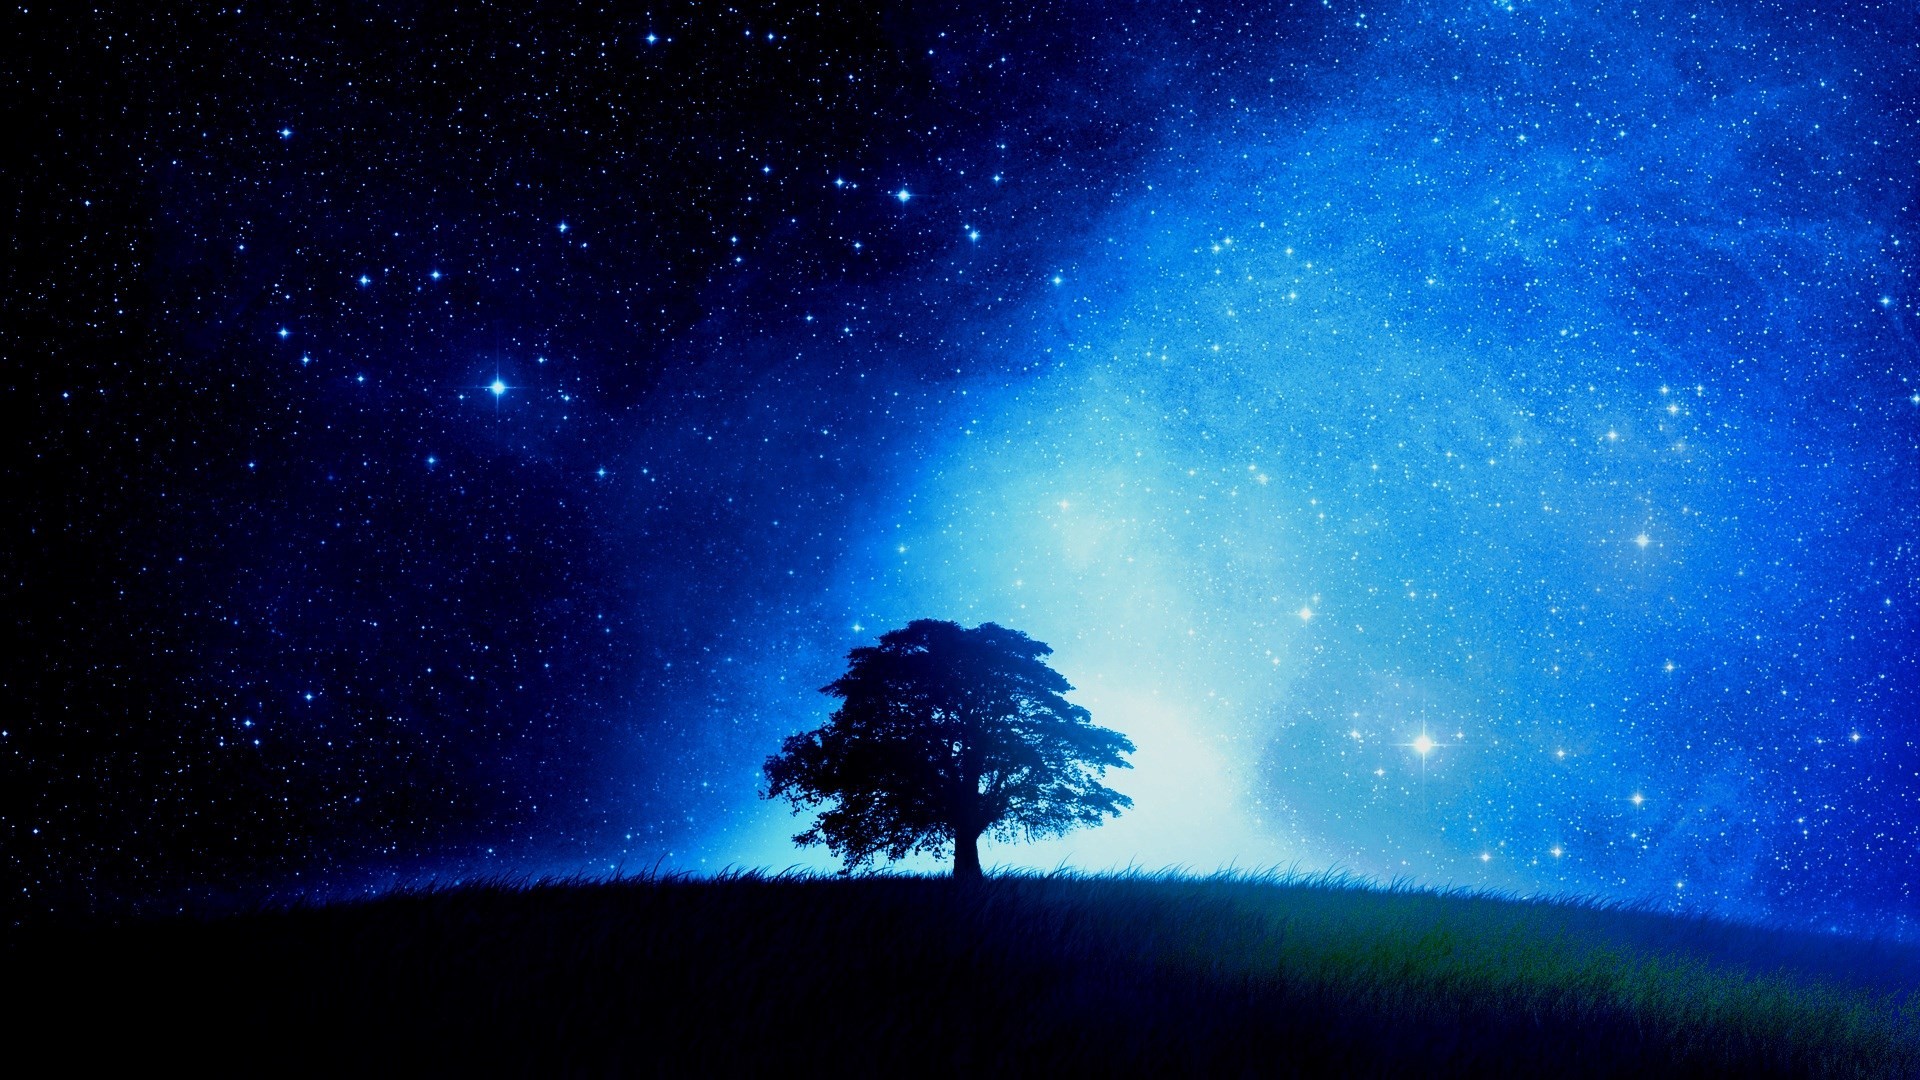 Những vì sao và con mắt ta, luôn có một cuộc phiêu lưu mới trên bầu trời khi màn đêm buông xuống. Hãy dừng lại và chiêm ngưỡng ảnh bầu trời sao tuyệt đẹp, chứa đựng rất nhiều bí mật và cảm xúc đầy kì thú.